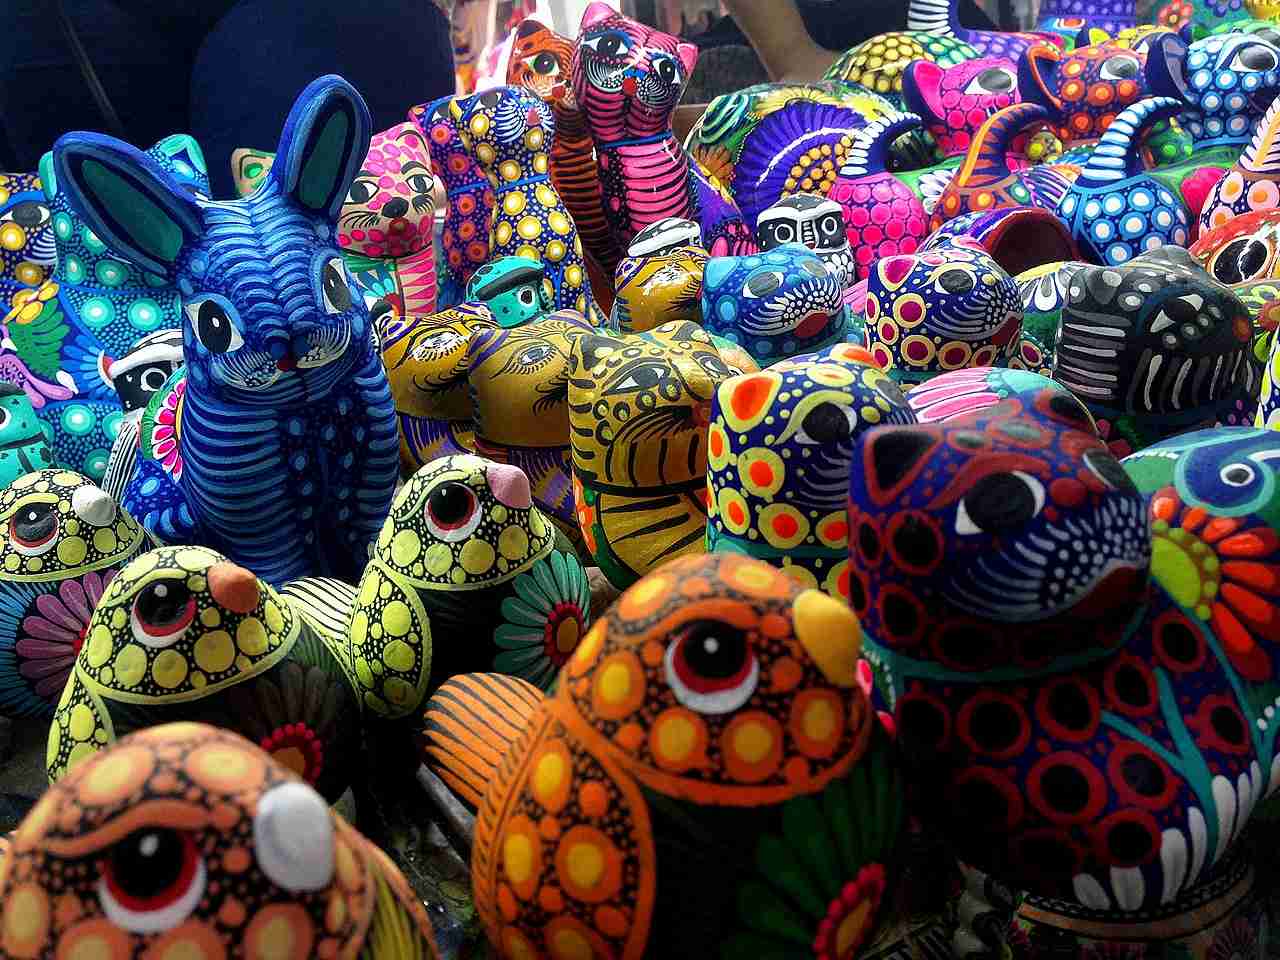 Mercado de Artesanías, San Miguel de Allende, Mexico